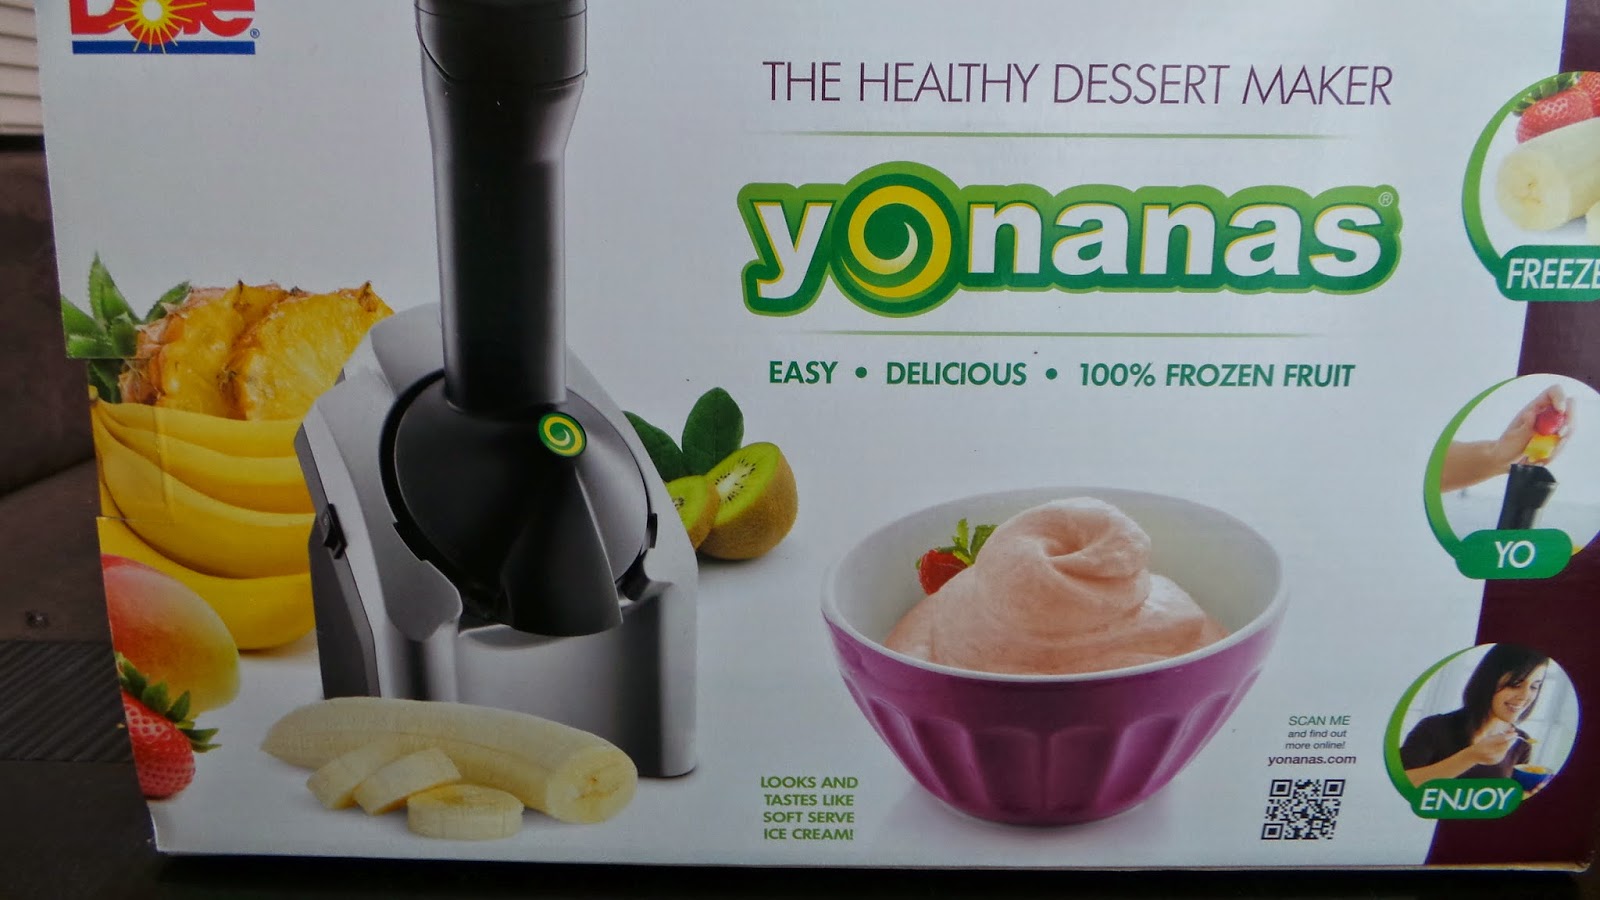 Frozen fruit treat Yonanas!